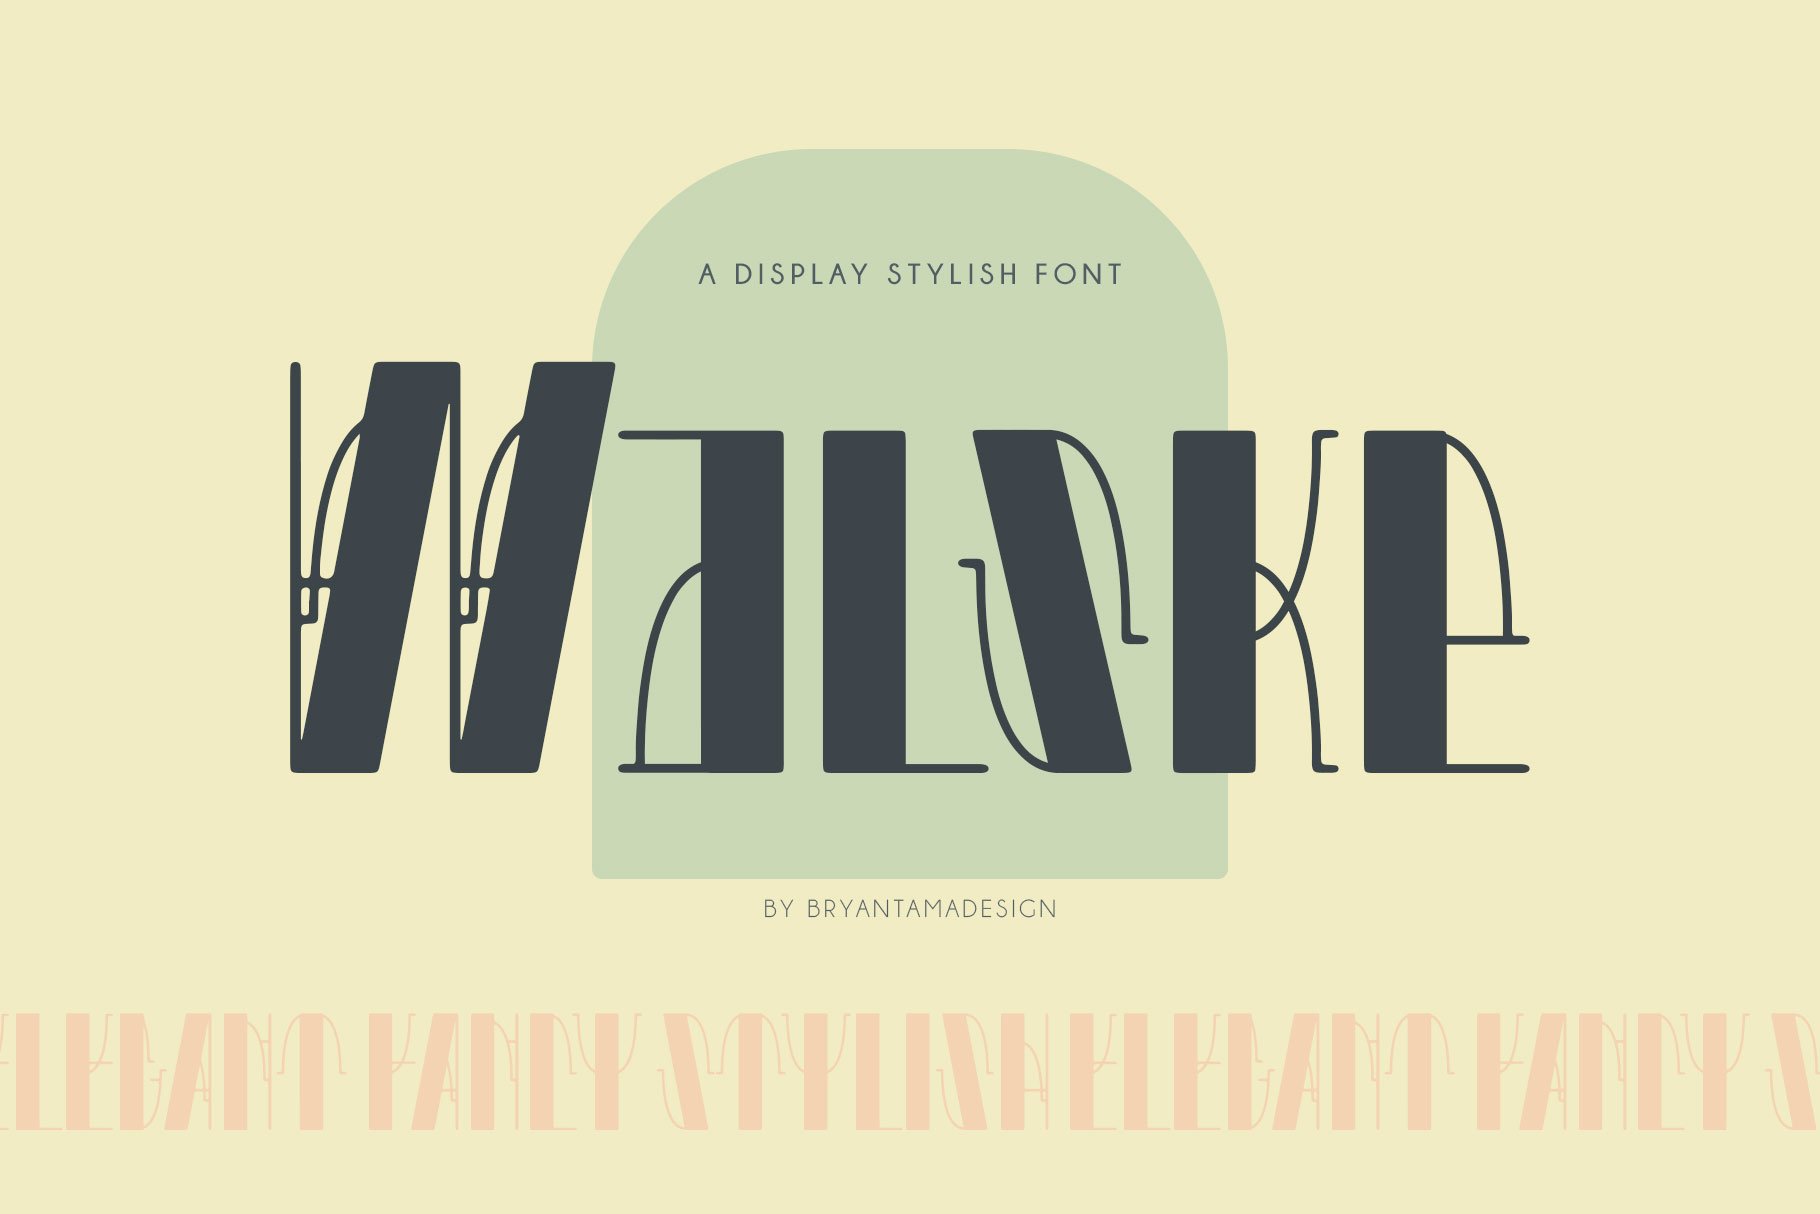 Walske - Vintage Display Font cover image.